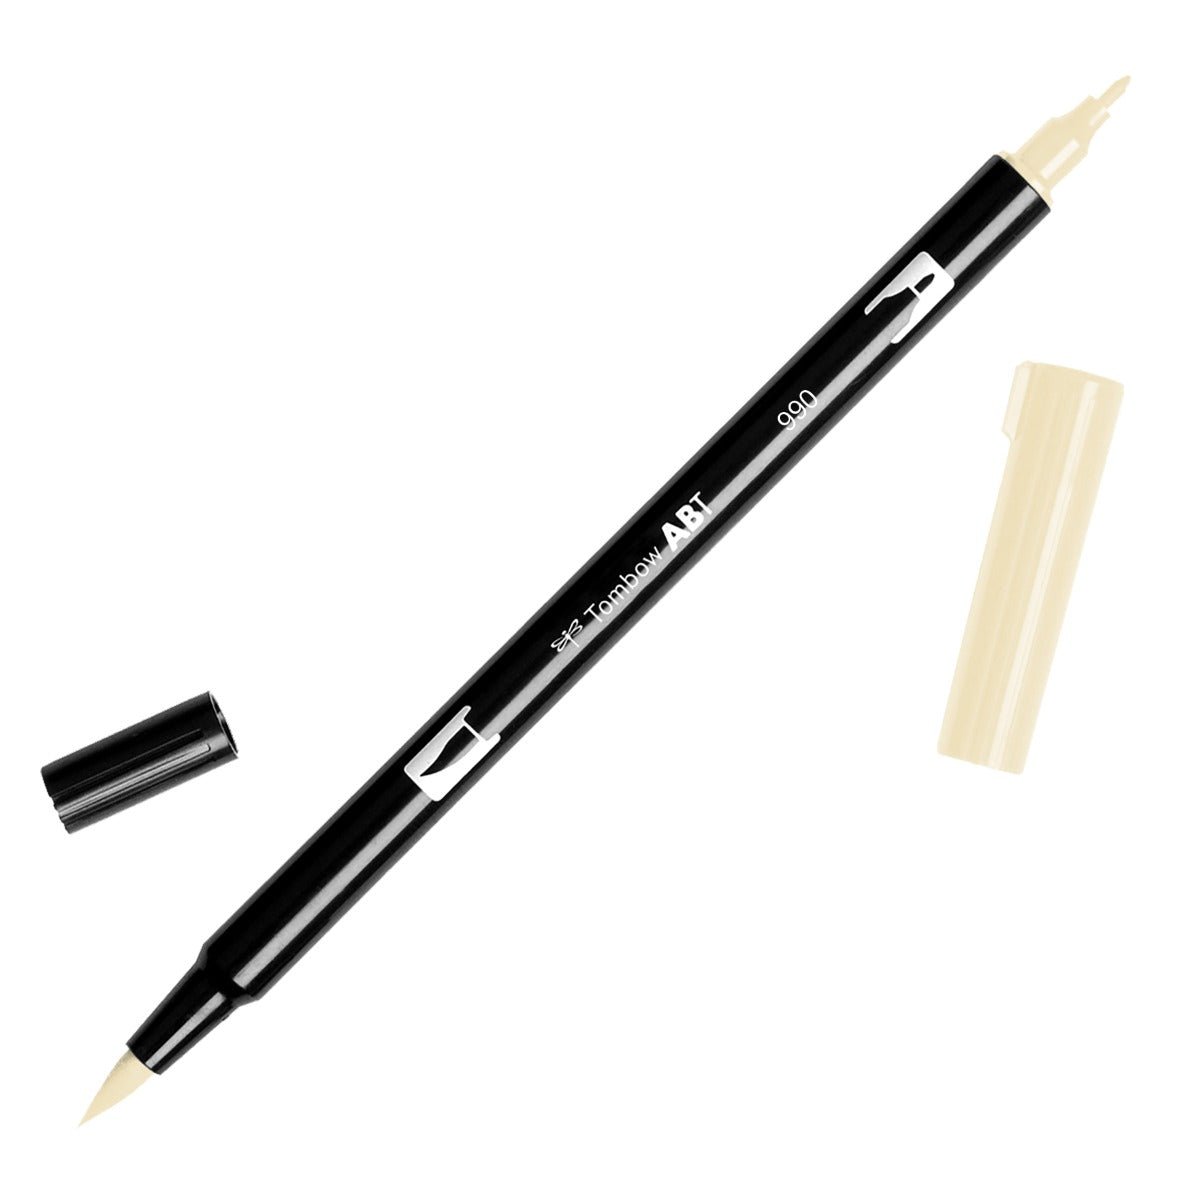 Tombow Dual Brush Pen 990 Light Sand - theartshop.com.au